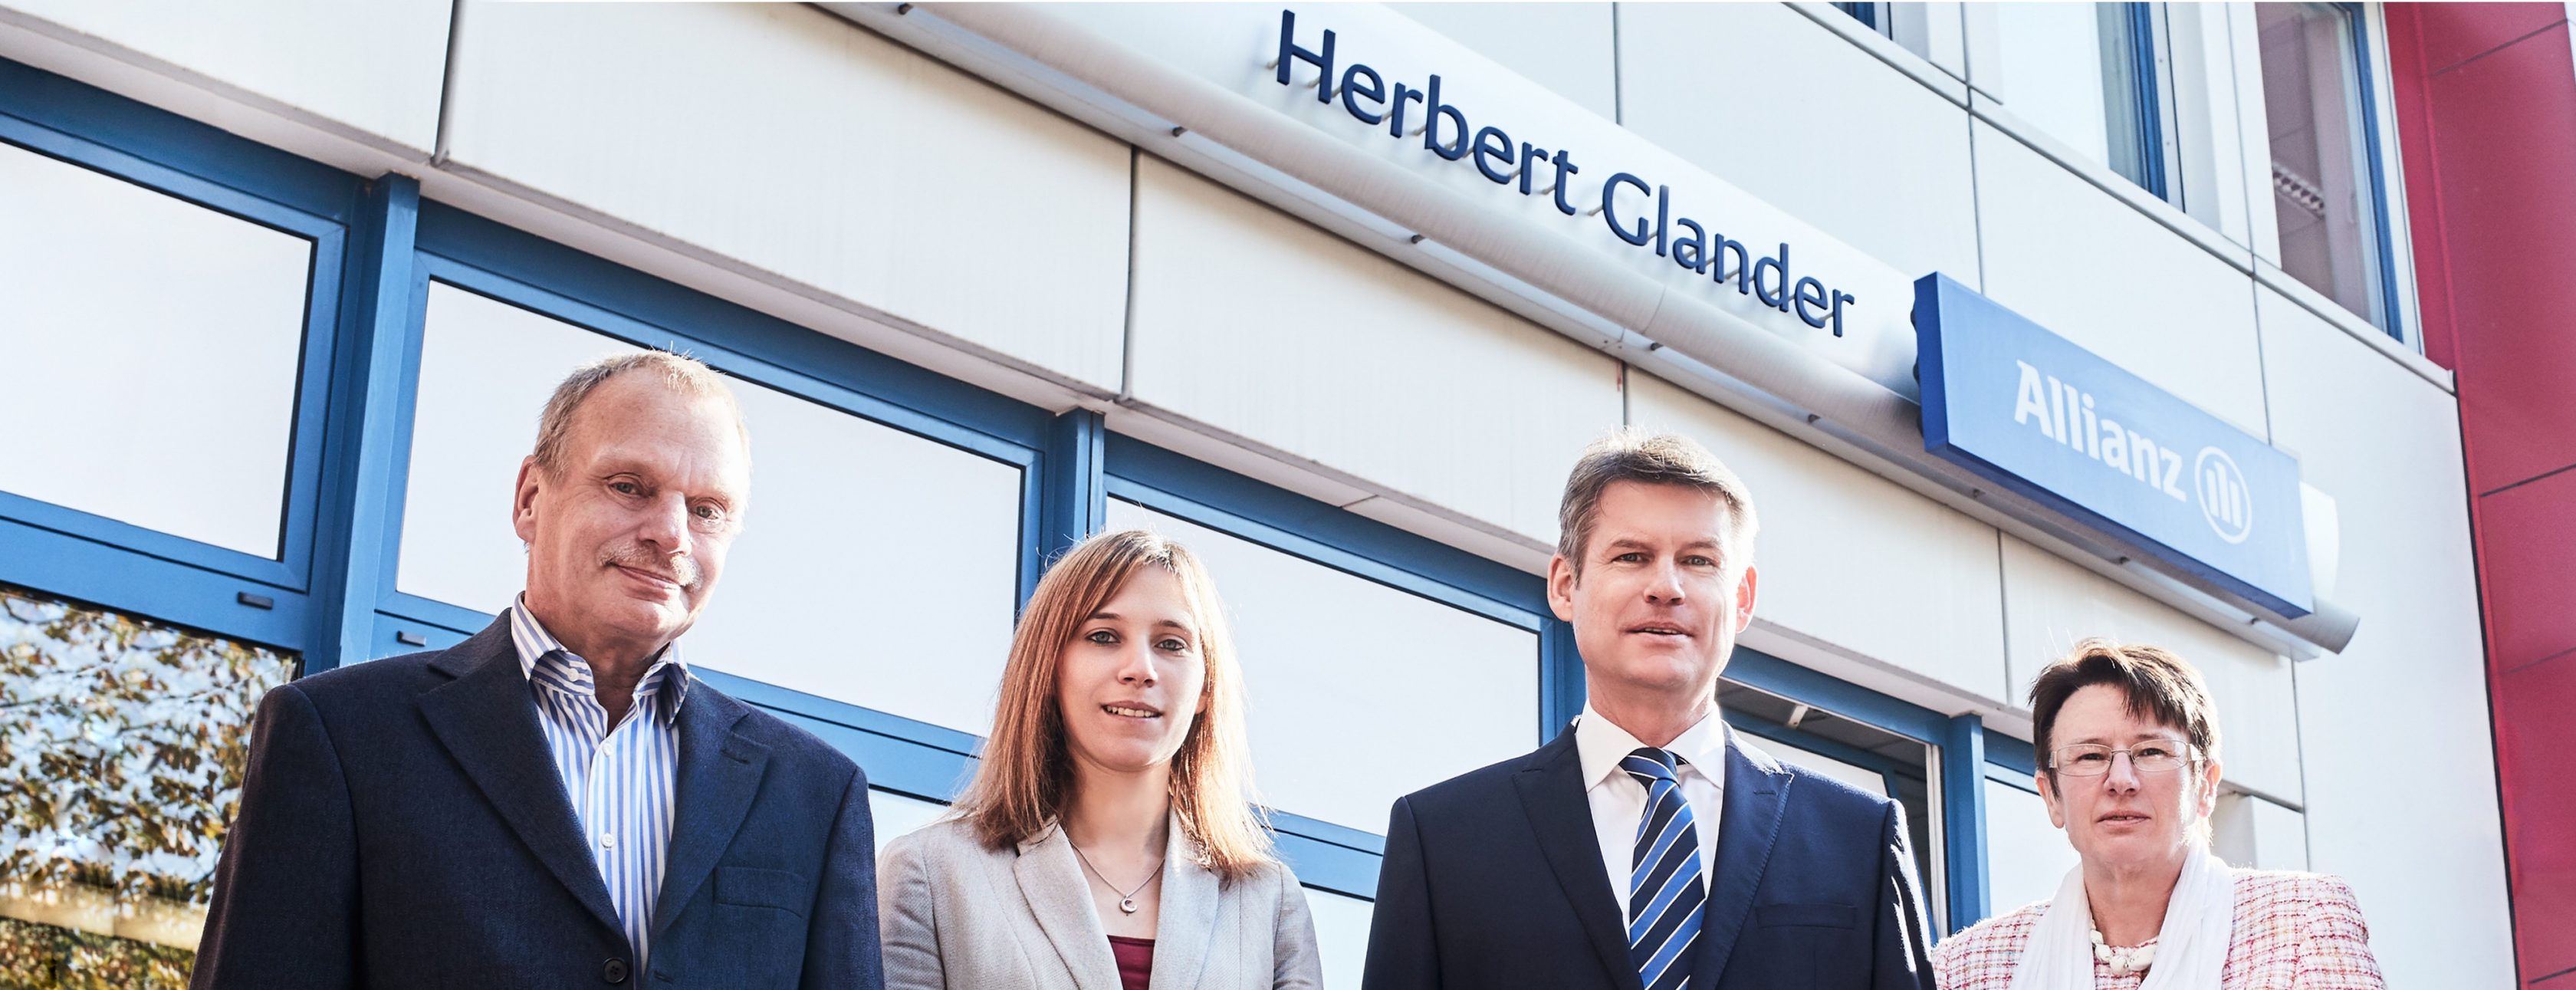 Allianz Versicherung Herbert Glander Hannover - Unser Team